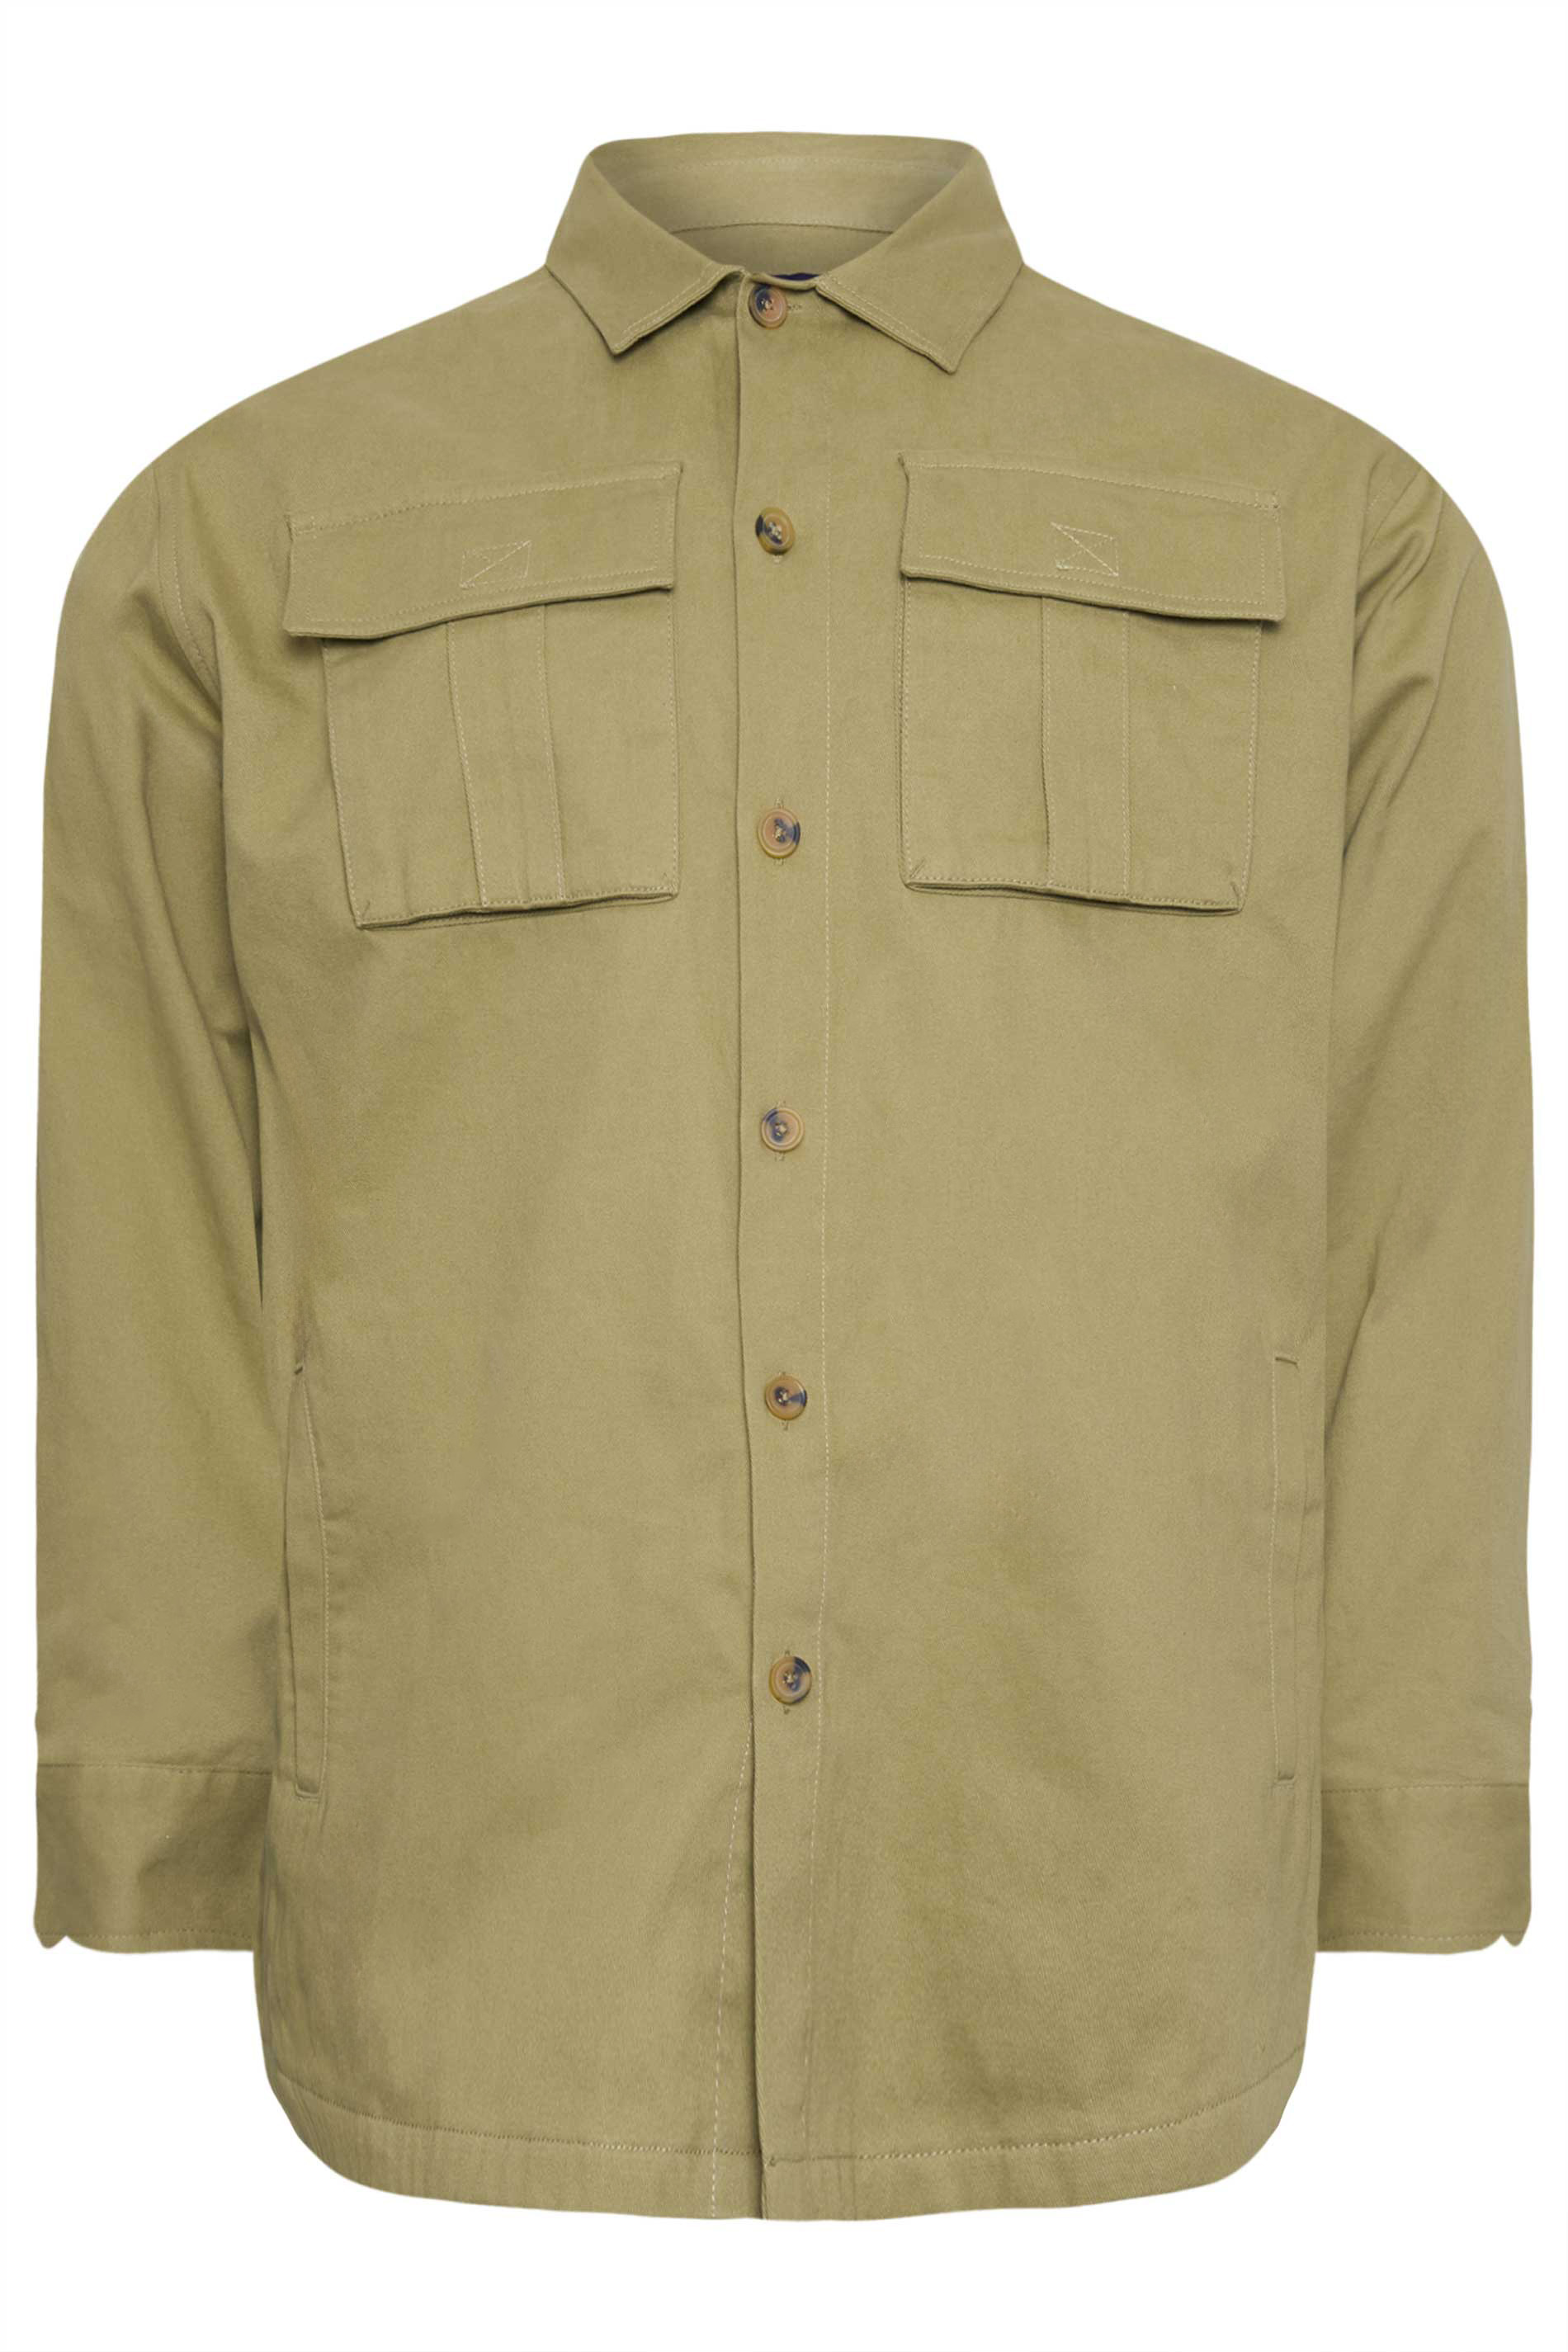 BadRhino Green Cotton Twill Shirt | BadRhino 3